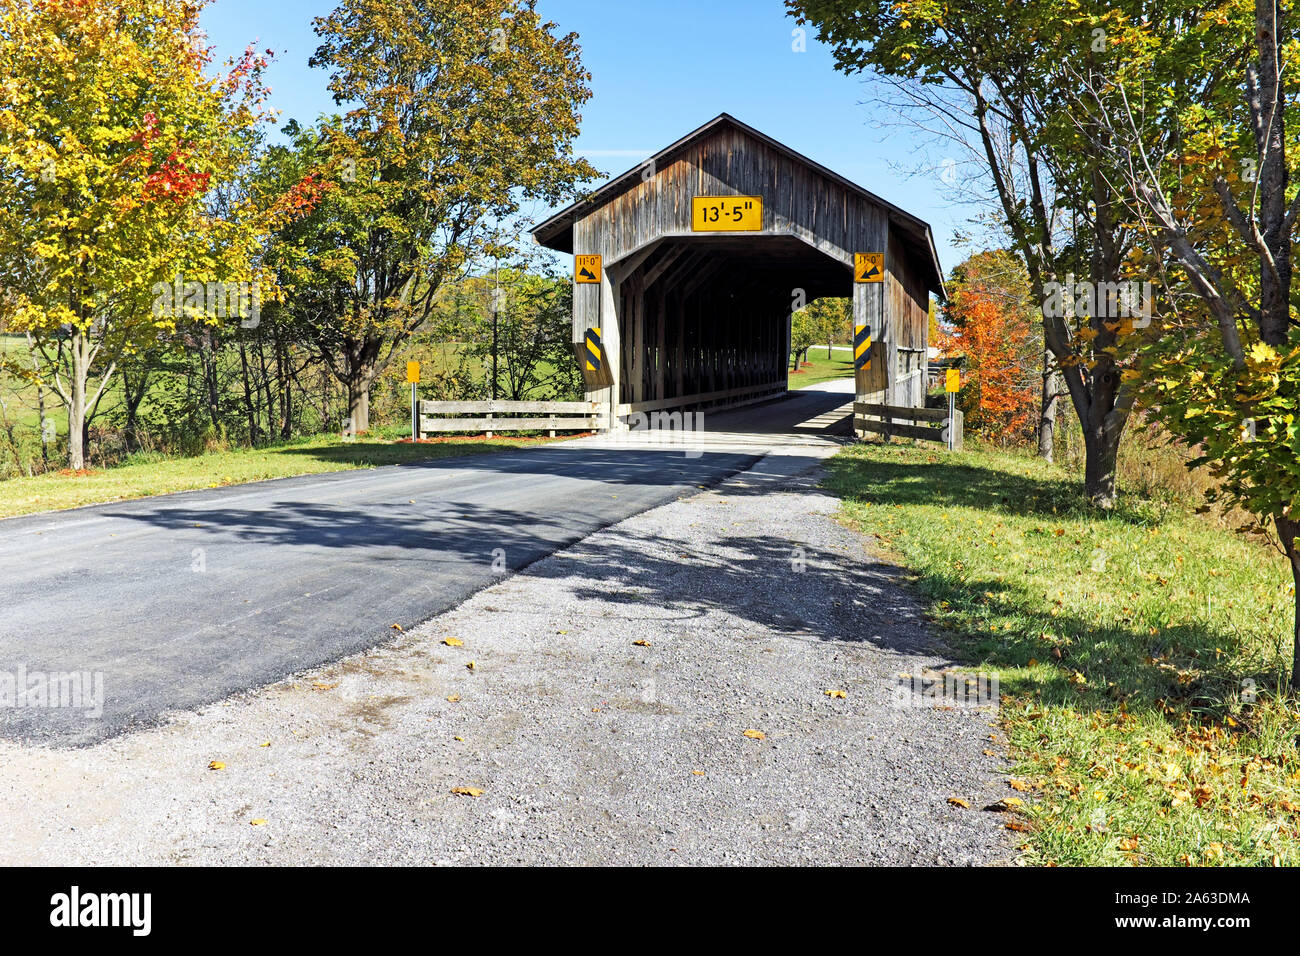 Die Caine Straße Brücke, eine von vielen Holz- gedeckten Brücken im Nordosten von Ohio, ist die erste Pratt Truss Bridge in Ohio und in Pierpont Gemeinde befindet. Stockfoto